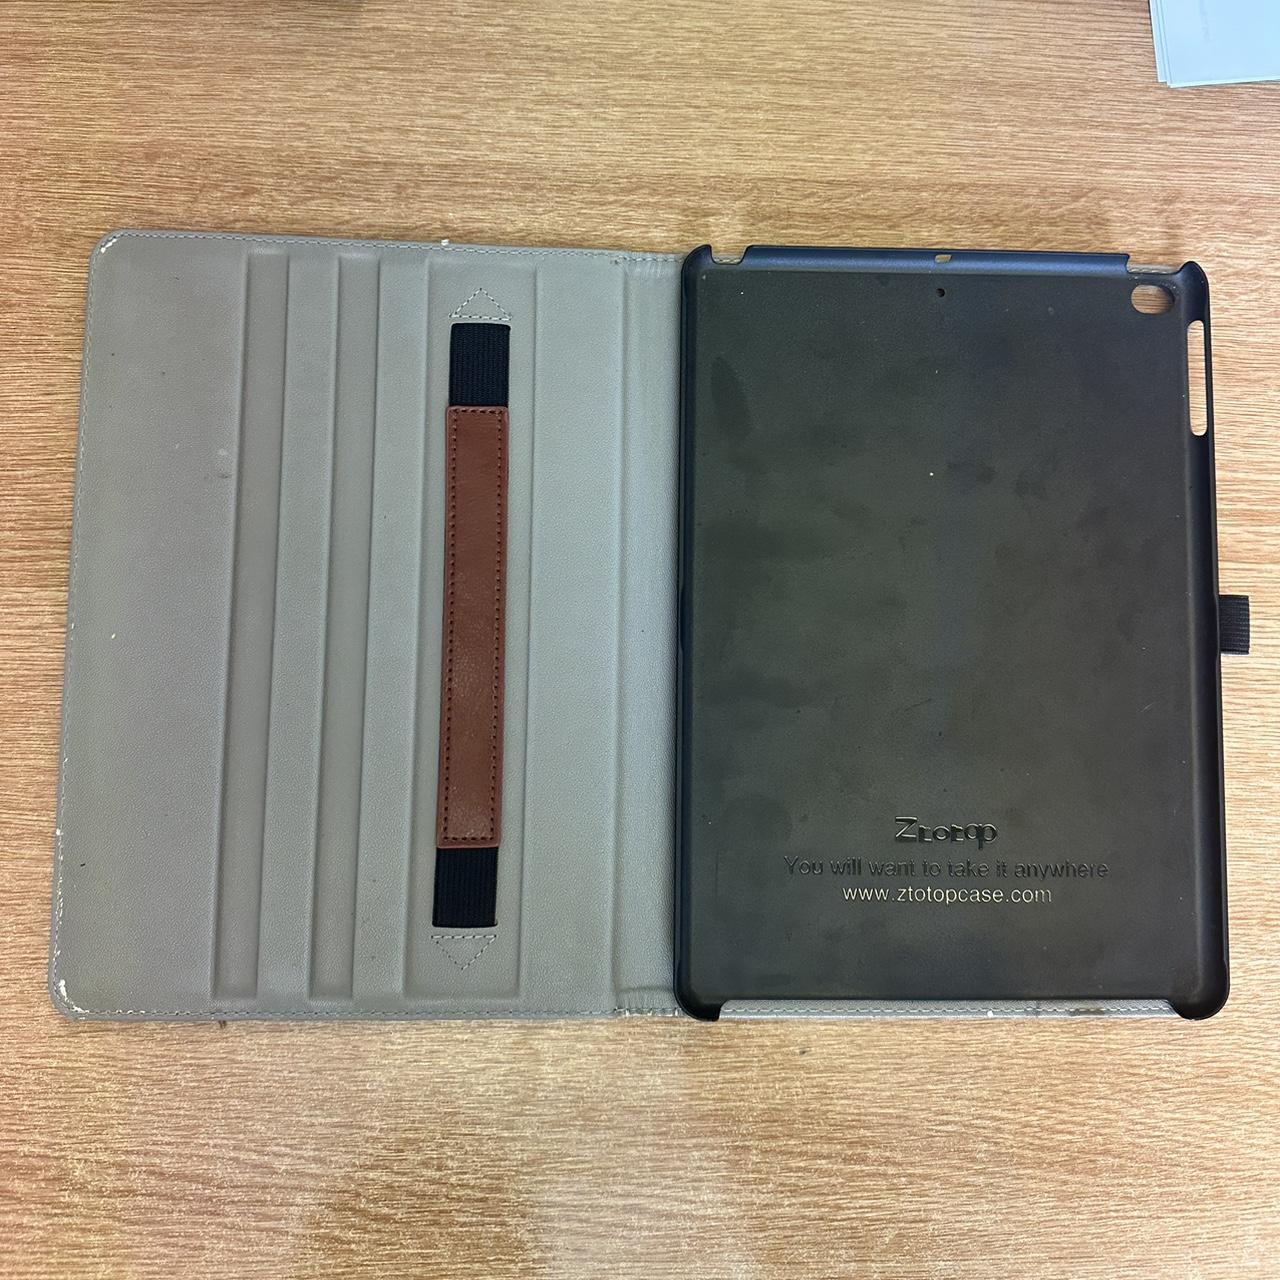 Louis Vuitton iPad case 🙌🏼 #ipad #louisvuitton #tech - Depop